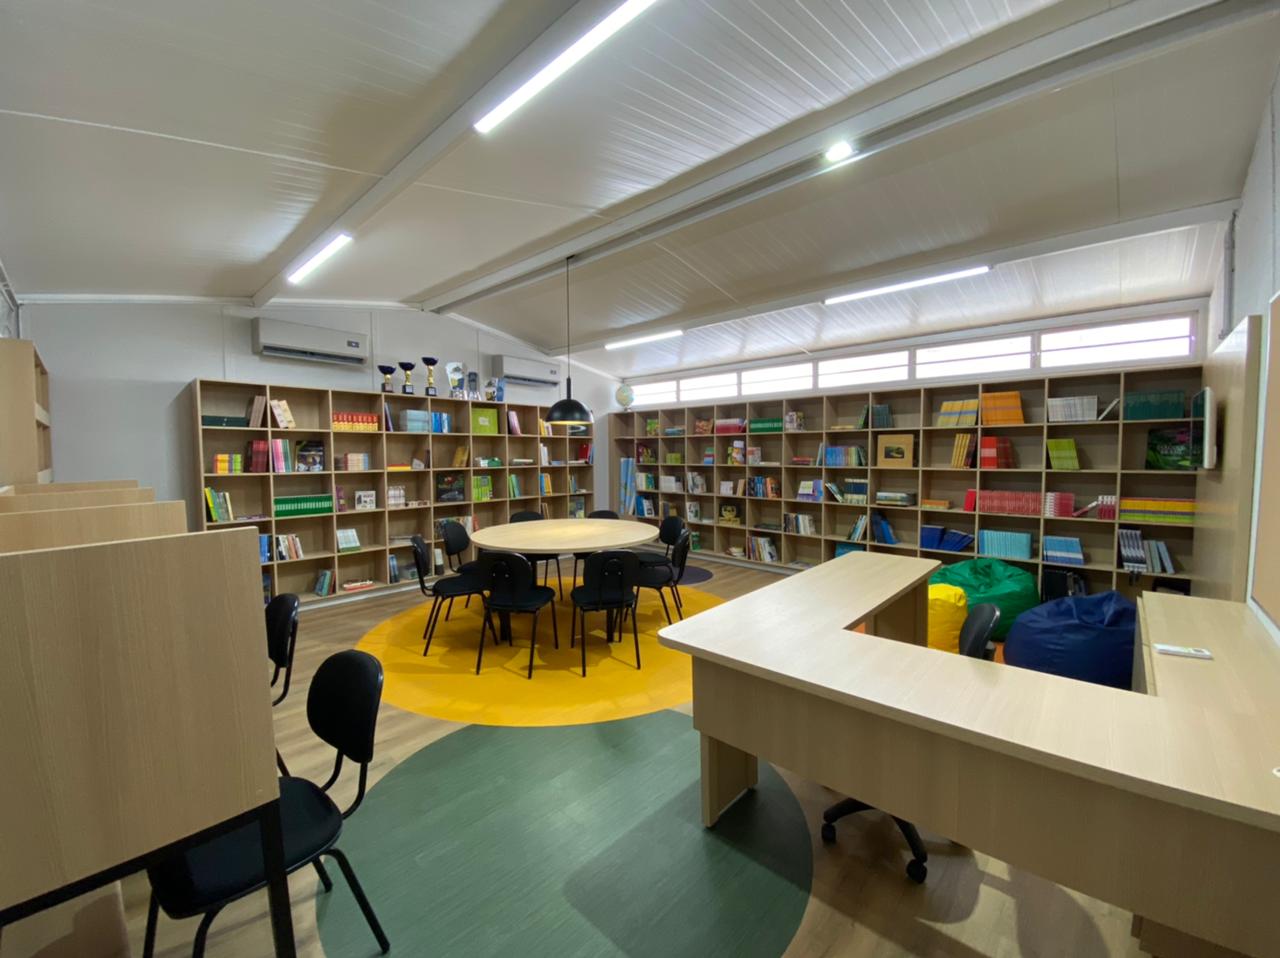 Biblioteca com estante de livros, mesa redonda com cadeiras, recepção e cabines individuais de estudo.